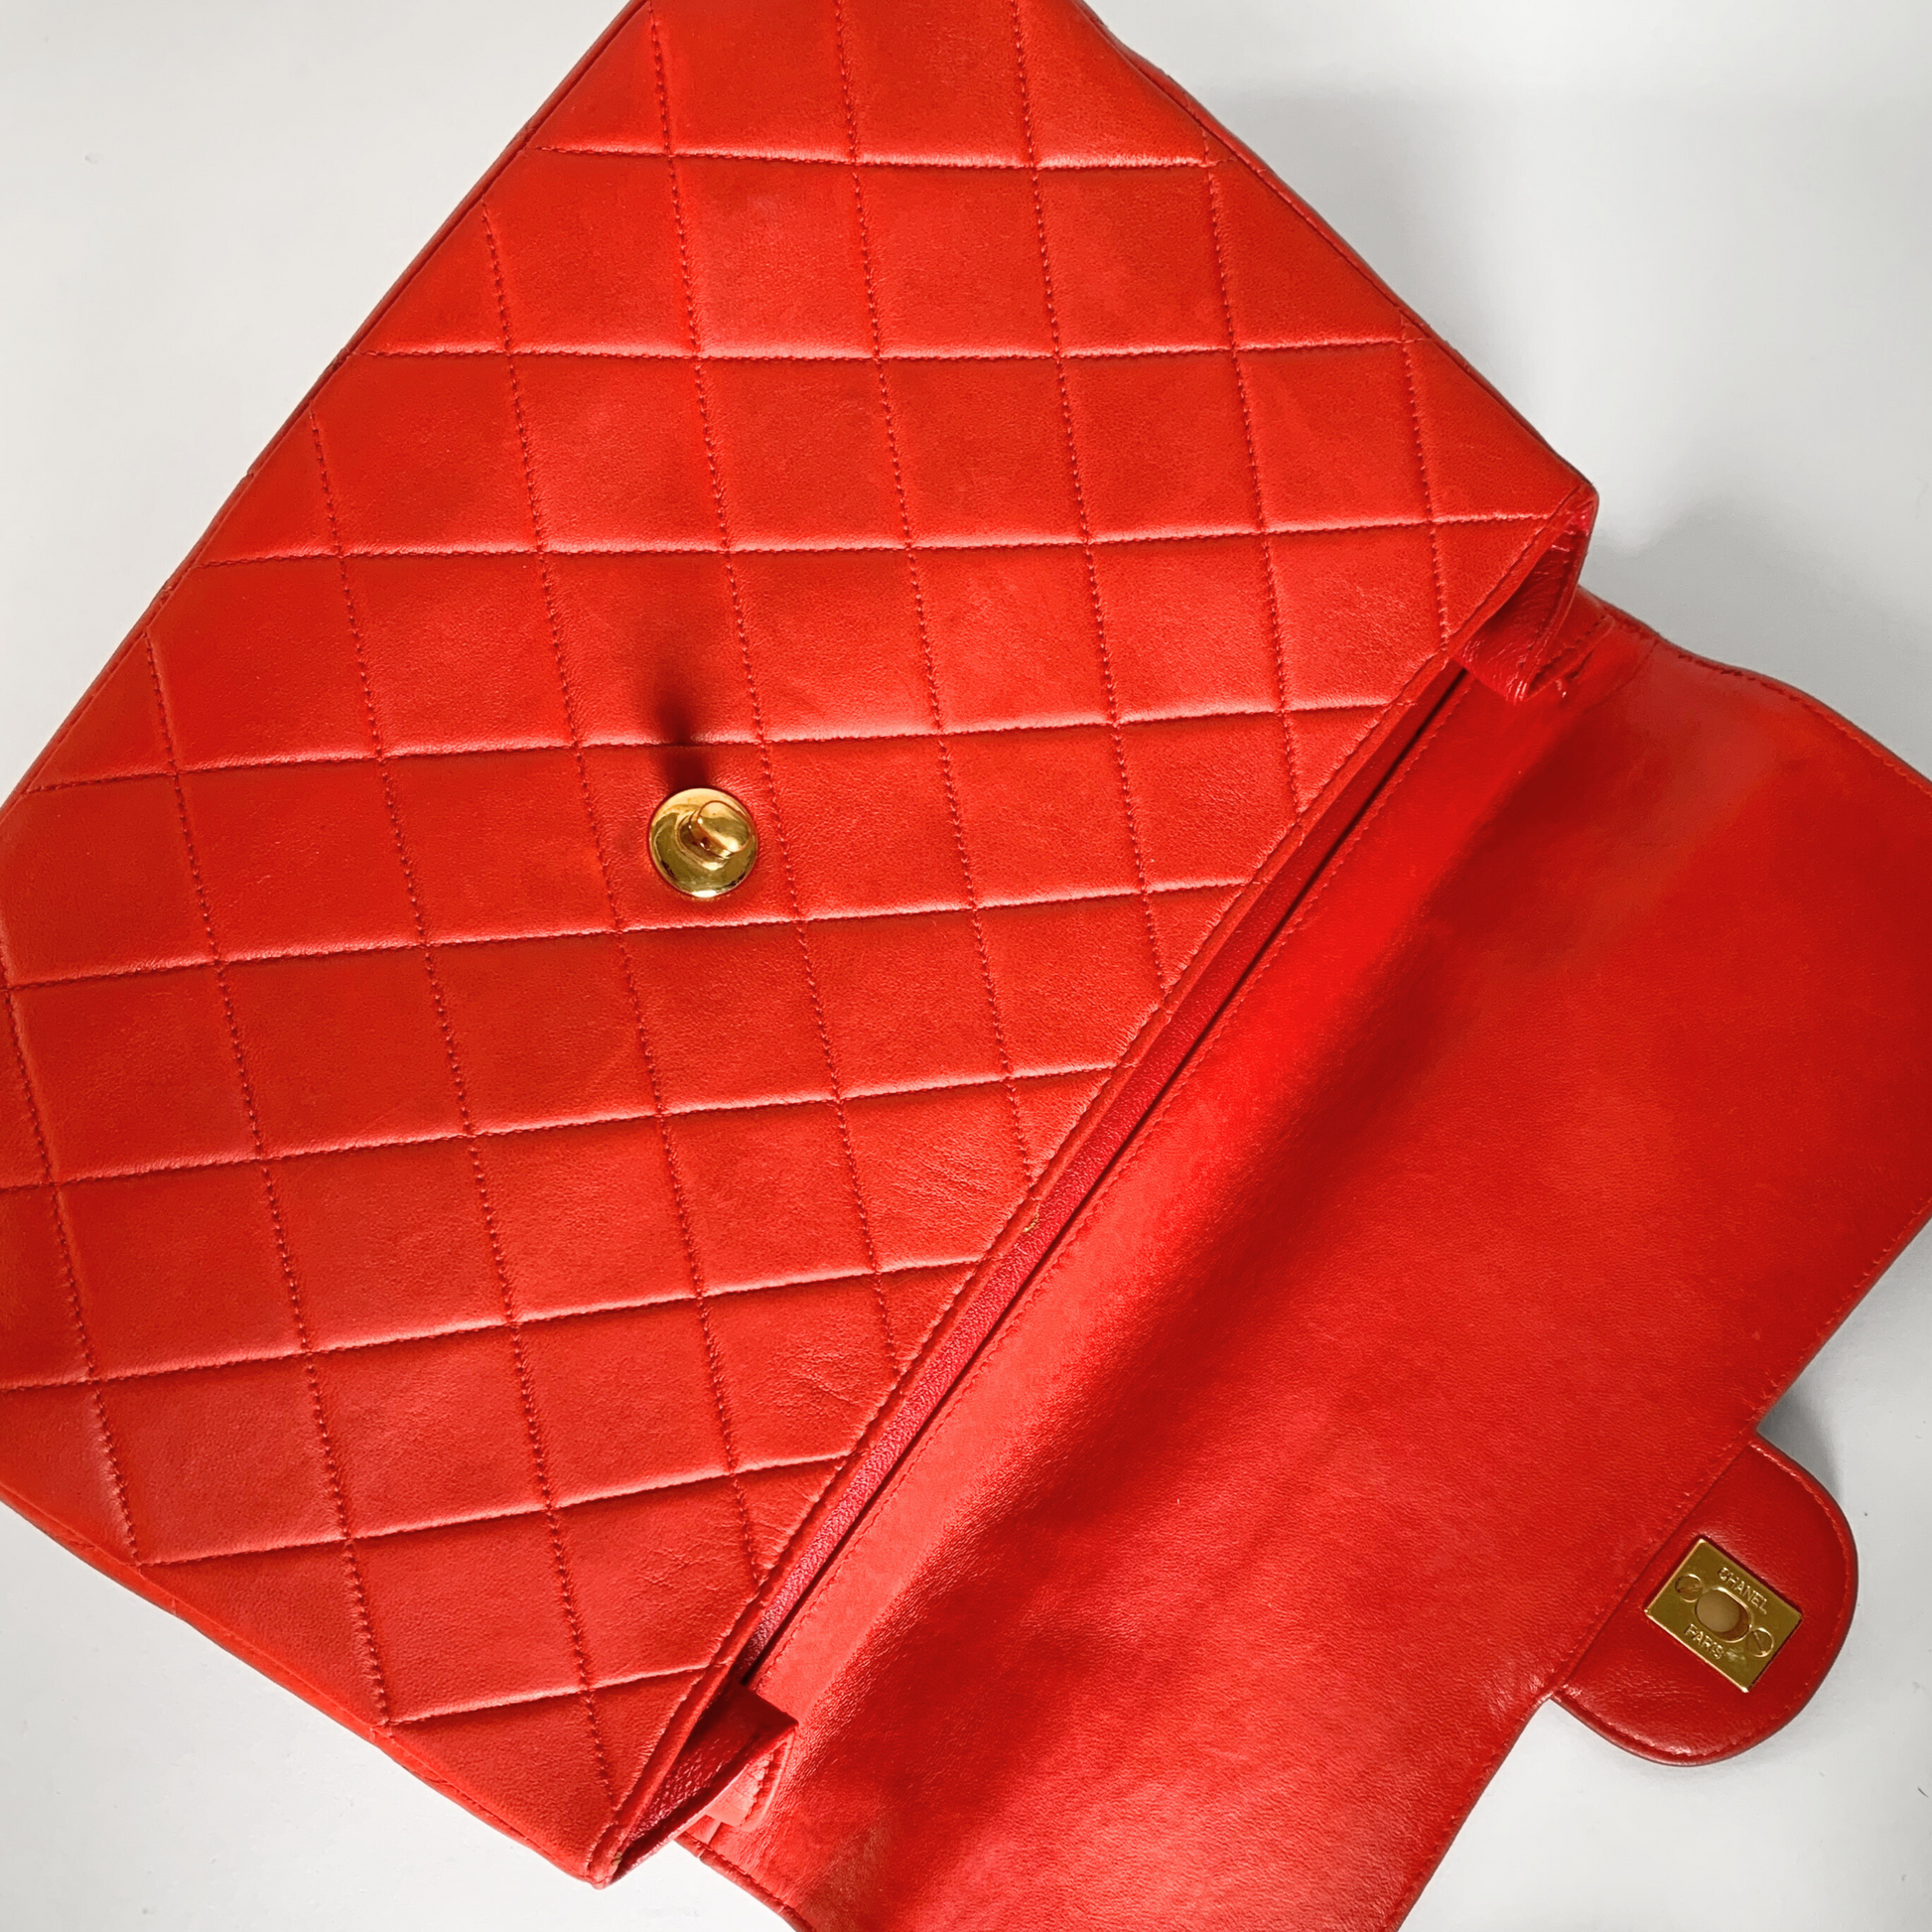 Orange Chanel Medium Classic Patent Double Flap Shoulder Bag